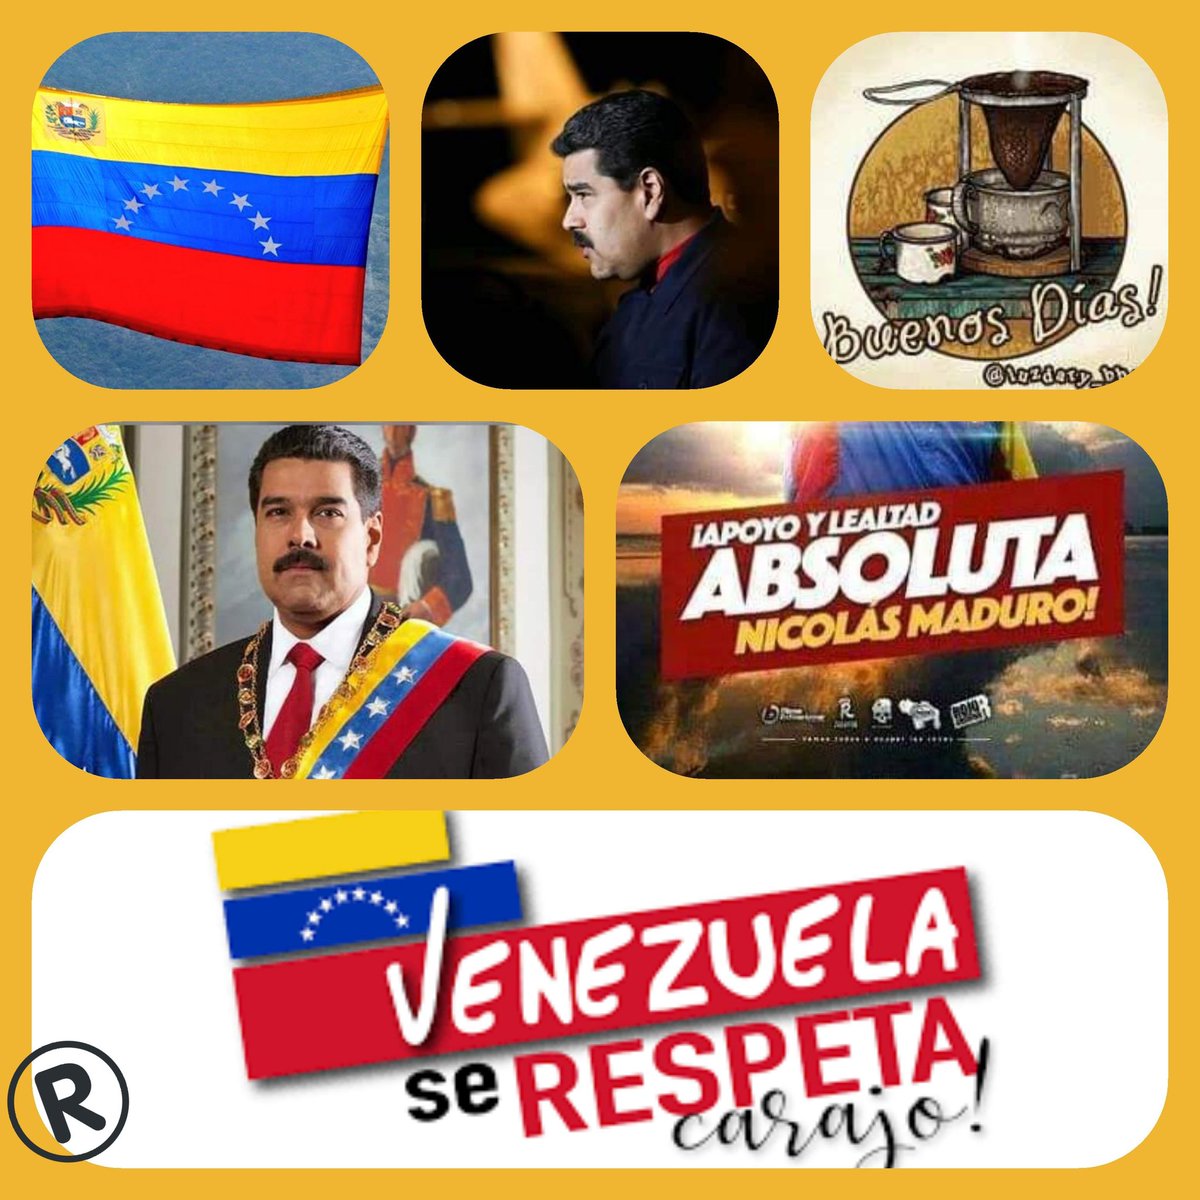 Buenos días Venezuela y 🌎 feliz Viernes excelente día camaradas, bendiciones un abrazo café salud y vida #VenezuelaDePaz #VenezuelaLibreYSoberana ☕🇻🇪❤💉😷